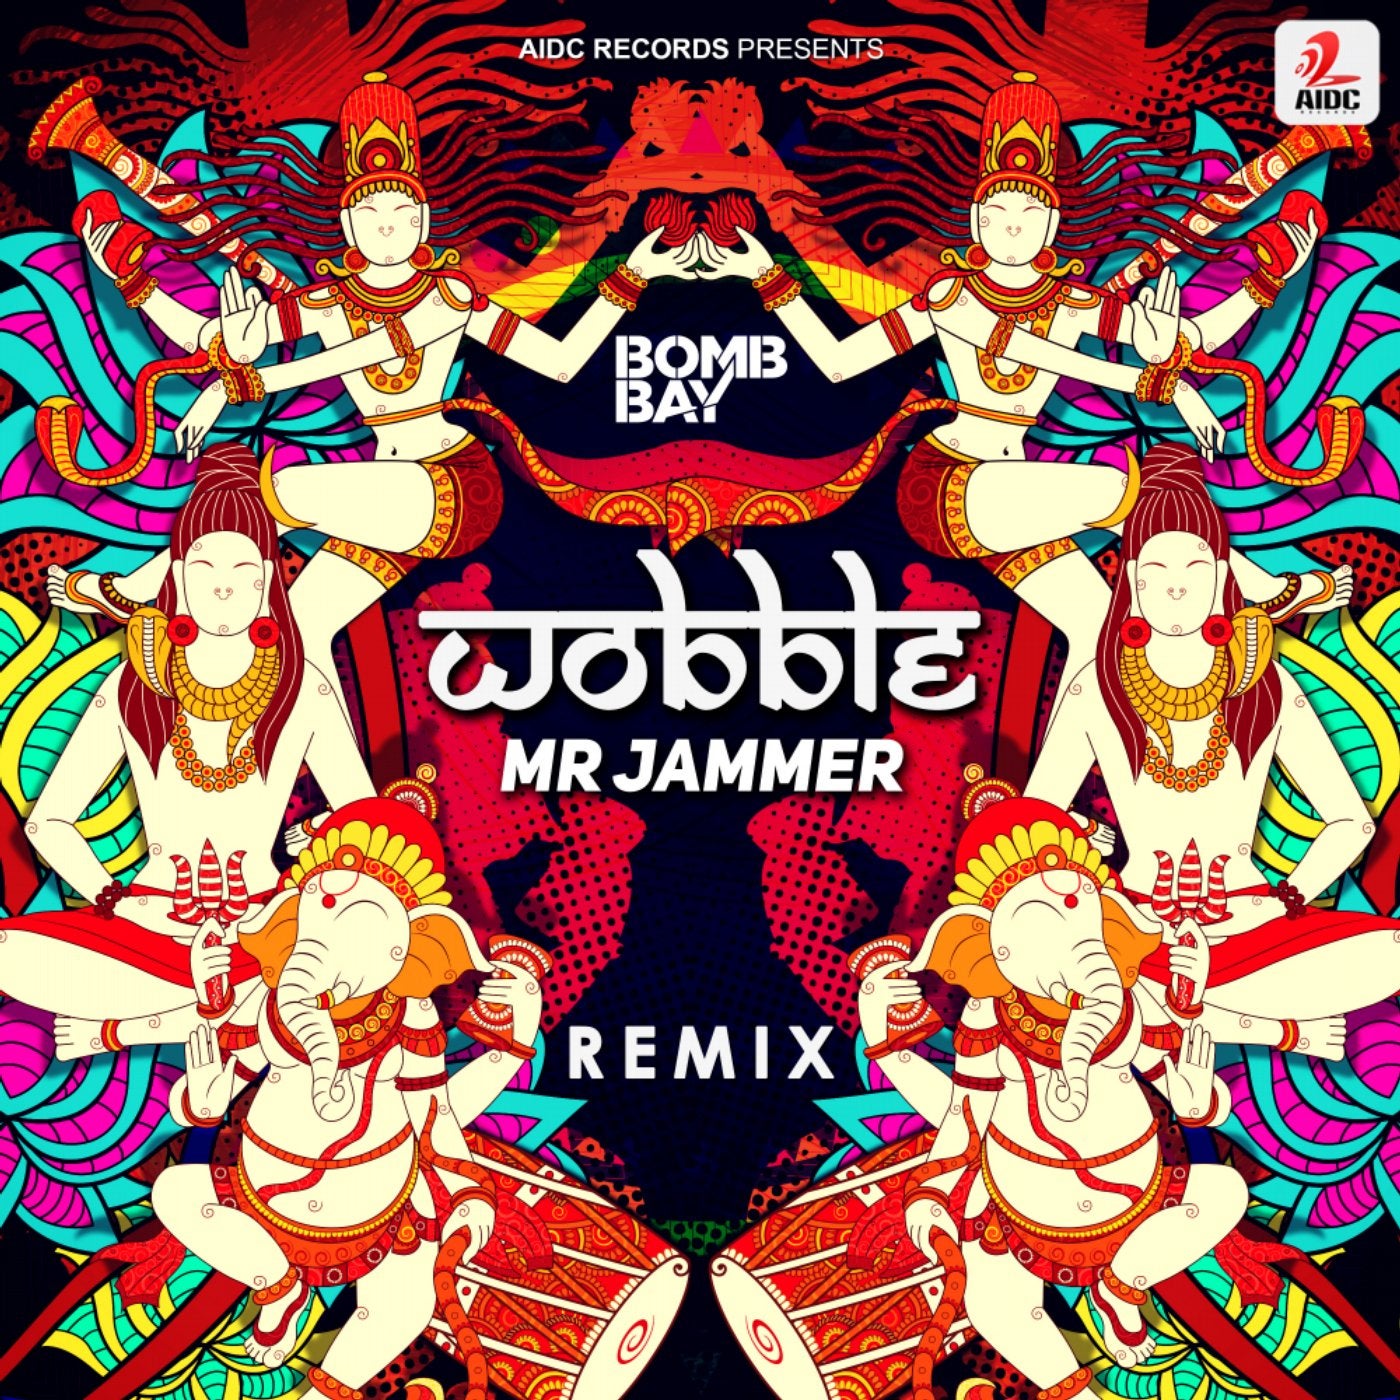 Wobble (Mr Jammer Remix)